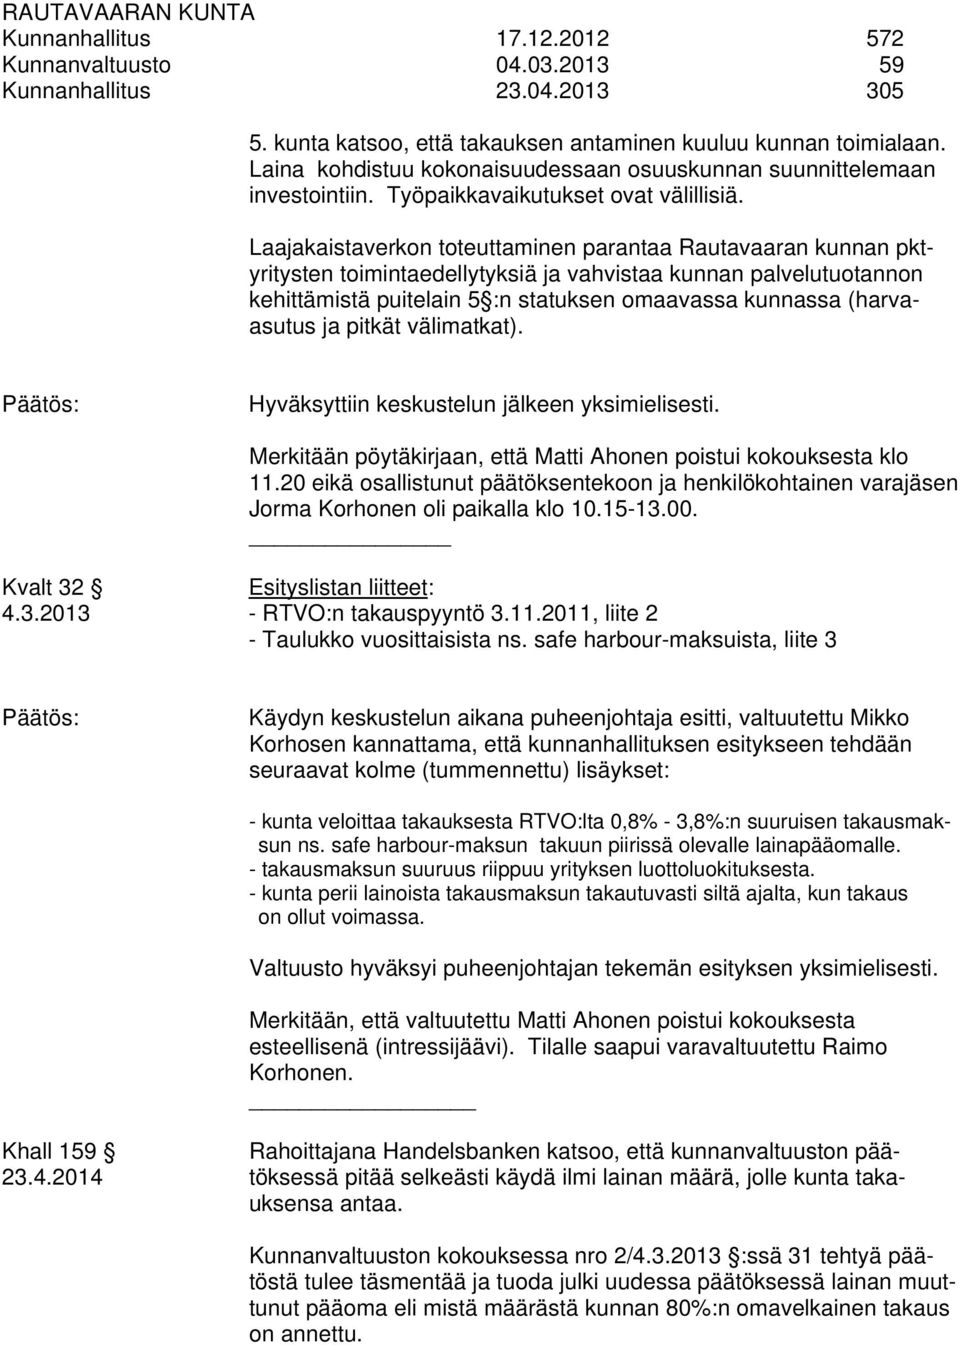 Laajakaistaverkon toteuttaminen parantaa Rautavaaran kunnan pktyritysten toimintaedellytyksiä ja vahvistaa kunnan palvelutuotannon kehittämistä puitelain 5 :n statuksen omaavassa kunnassa